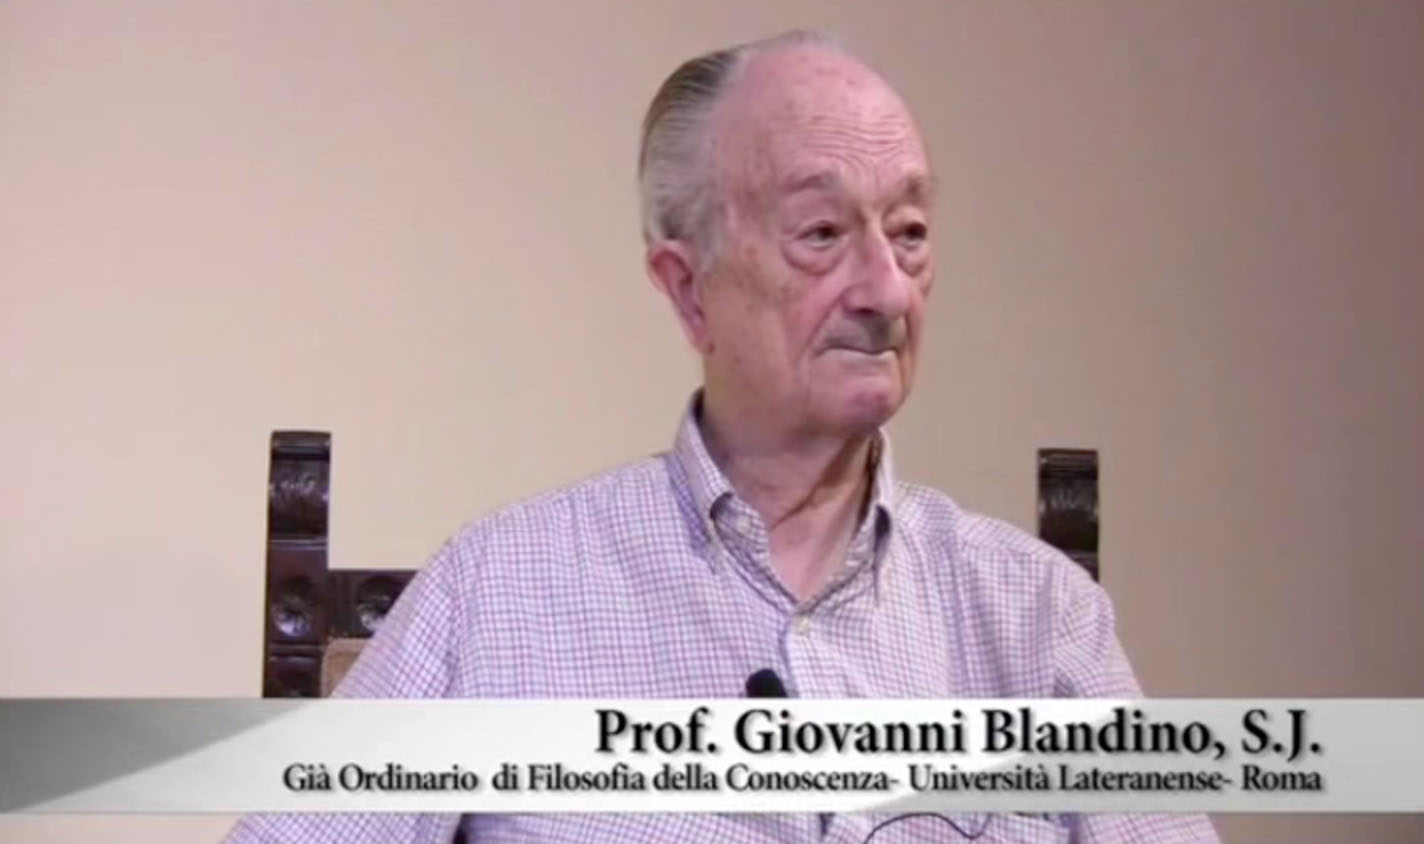 Giovanni Blandino, S.J. - Ordinario di Filosofia della Conoscenza Università Lateranense di Roma